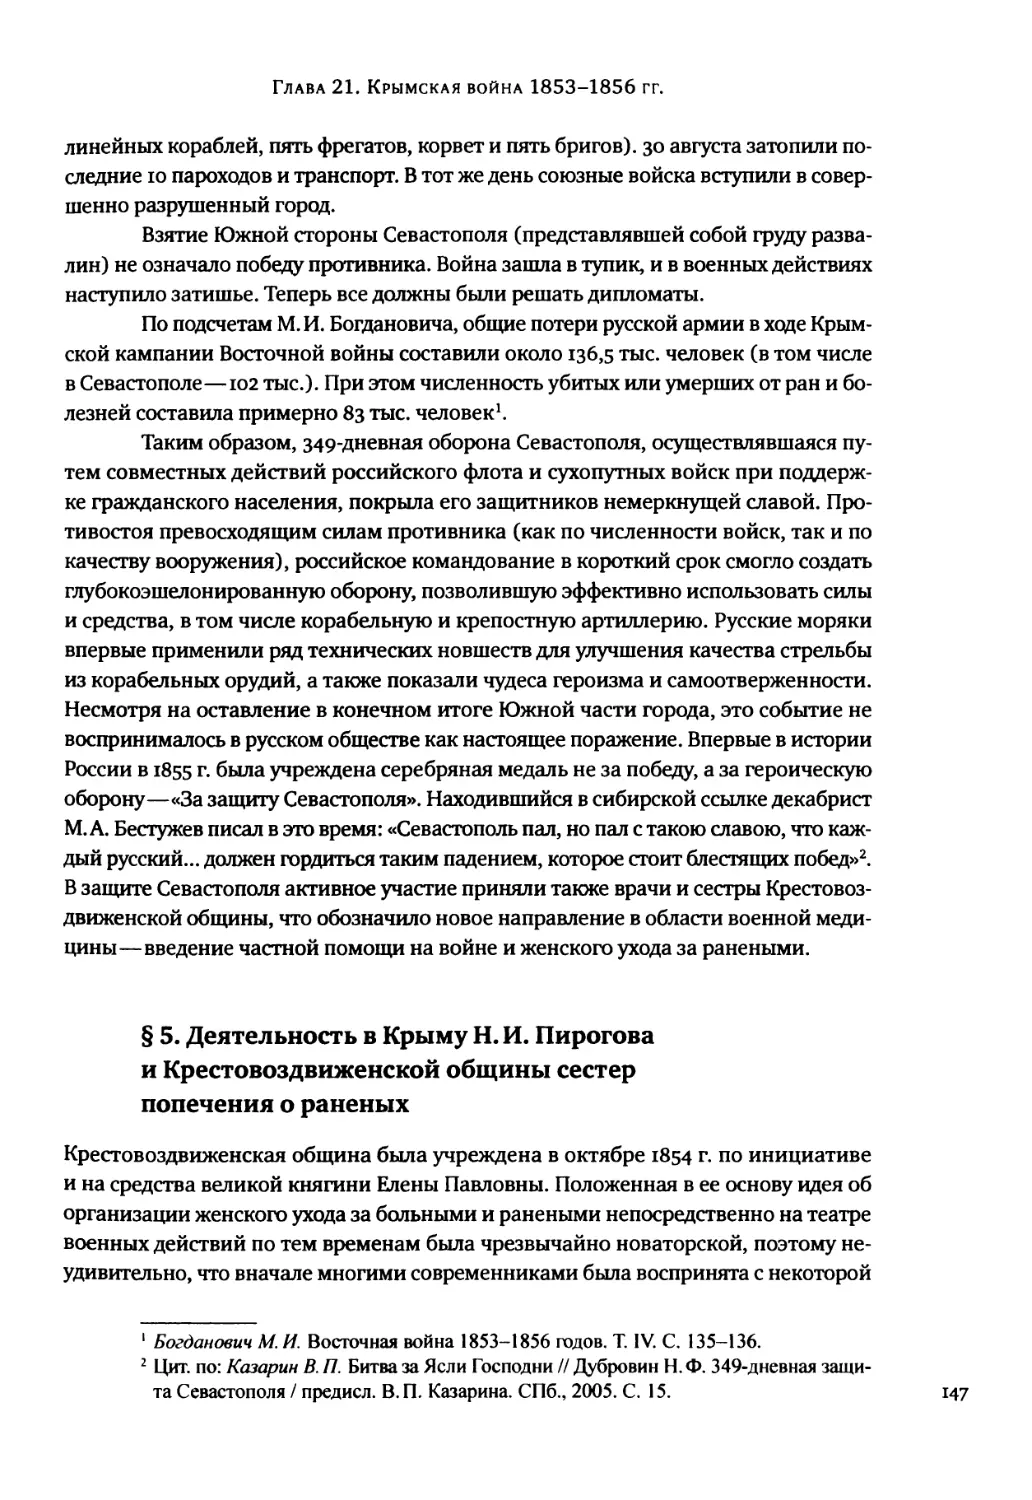 § 5. Деятельность в Крыму Н. И. Пирогова и Крестовоздвиженской общины сестер попечения о раненых